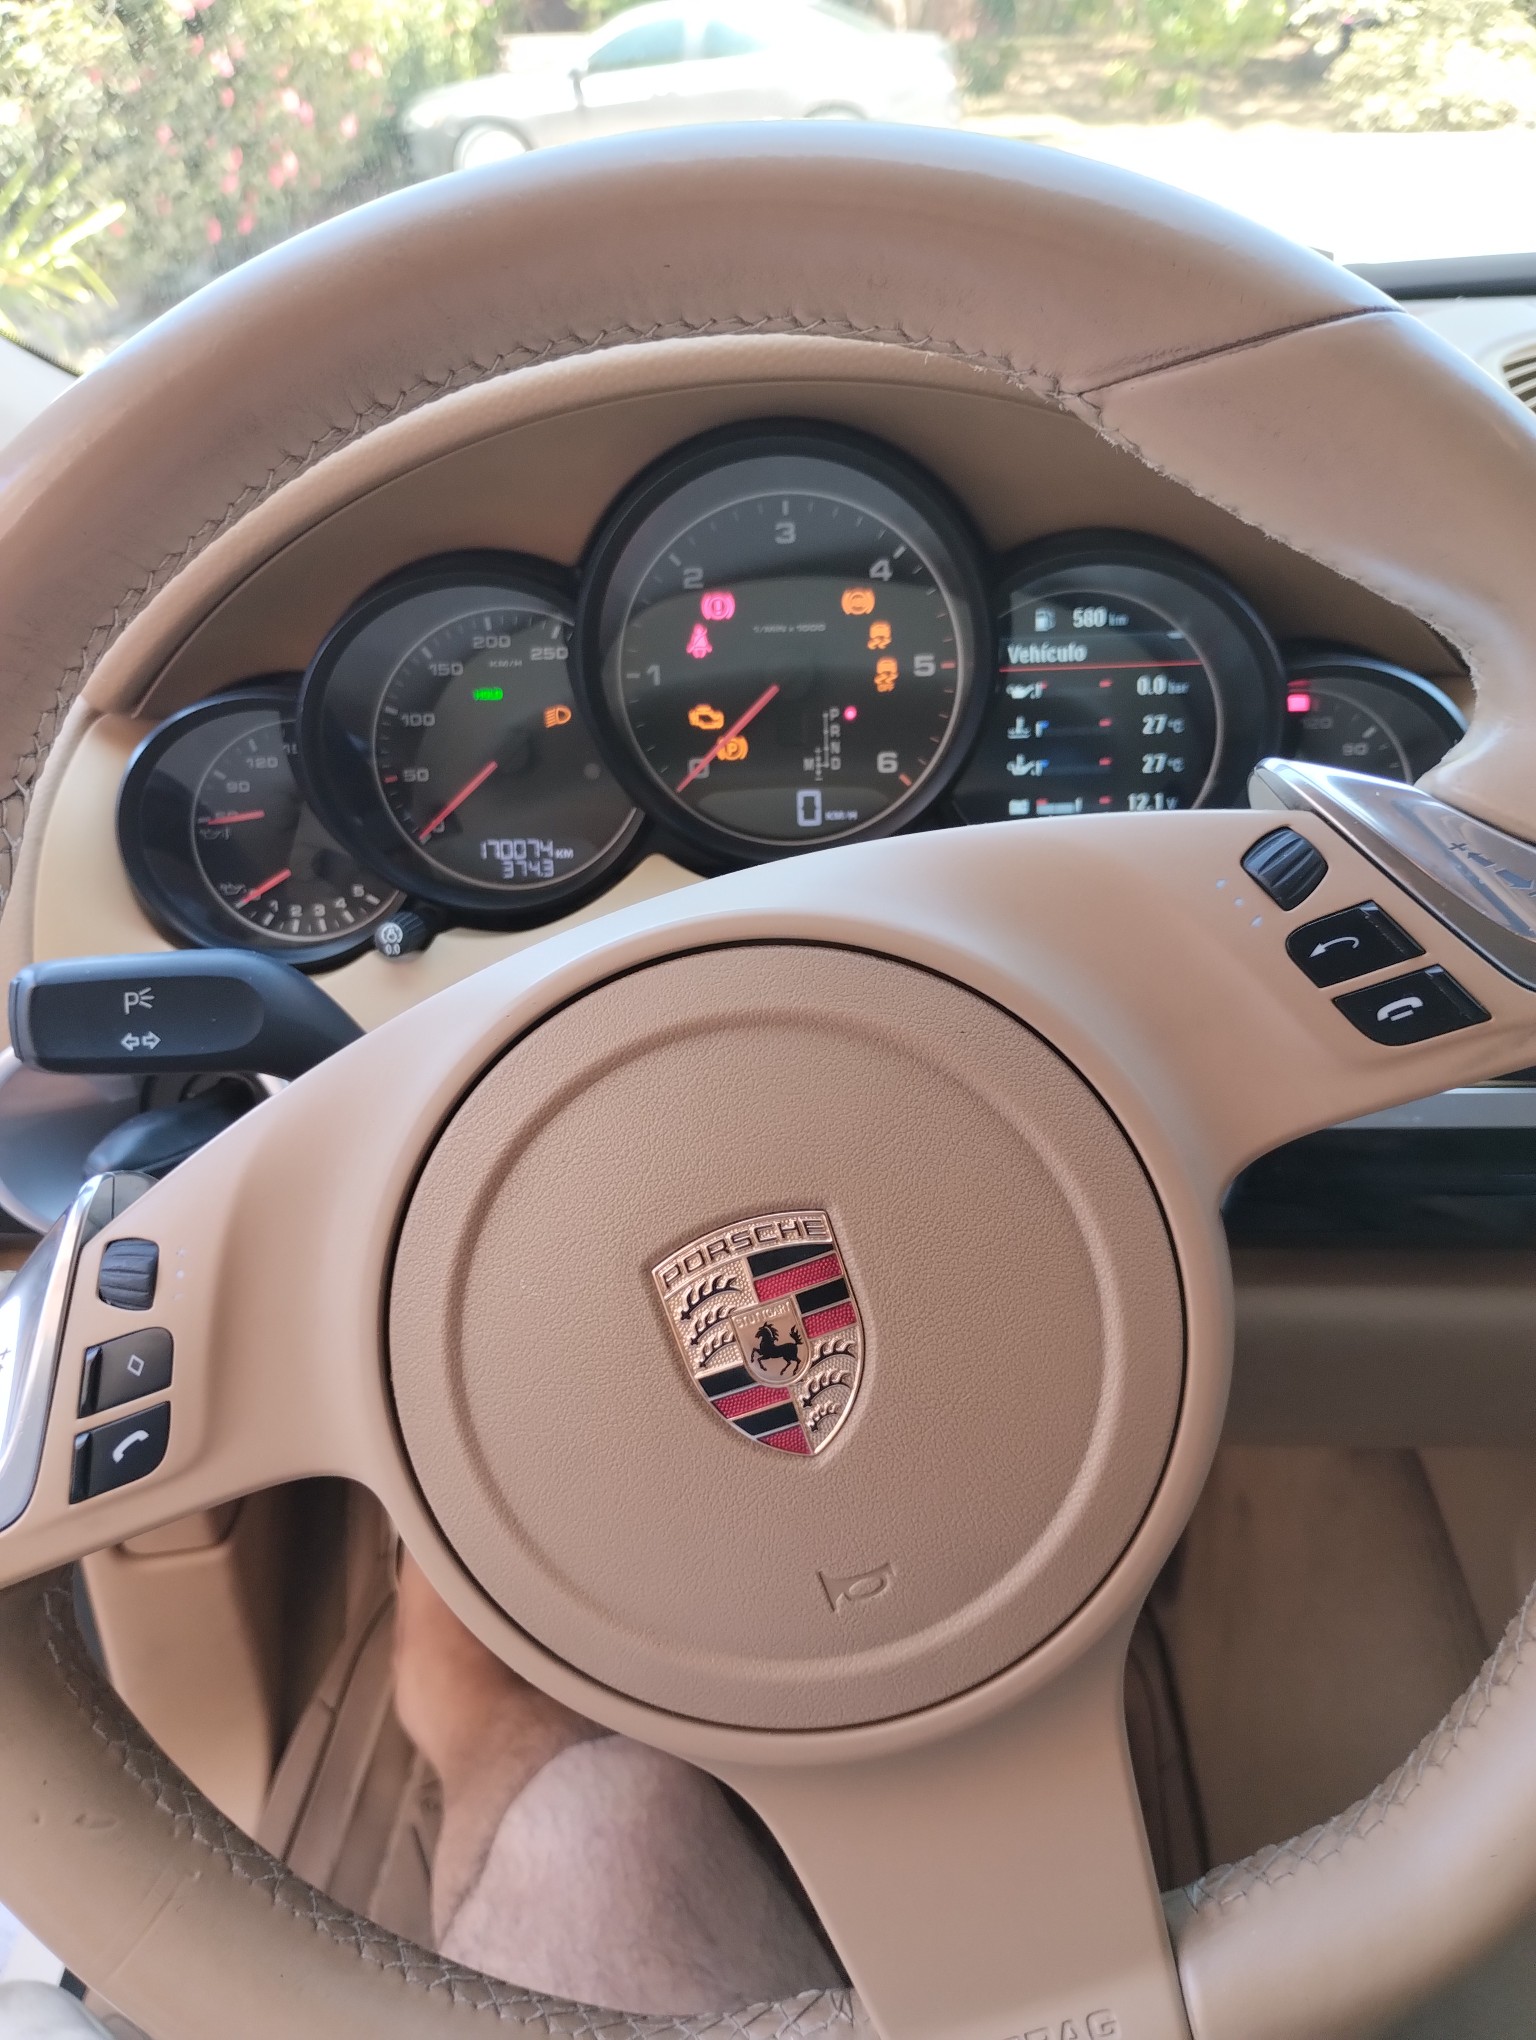 jeepetas y camionetas - Porsche Cayenne 2014 Turbo Diesel 3.0 V6
300 CV por la Casa Porsche 40.000 KM. 5